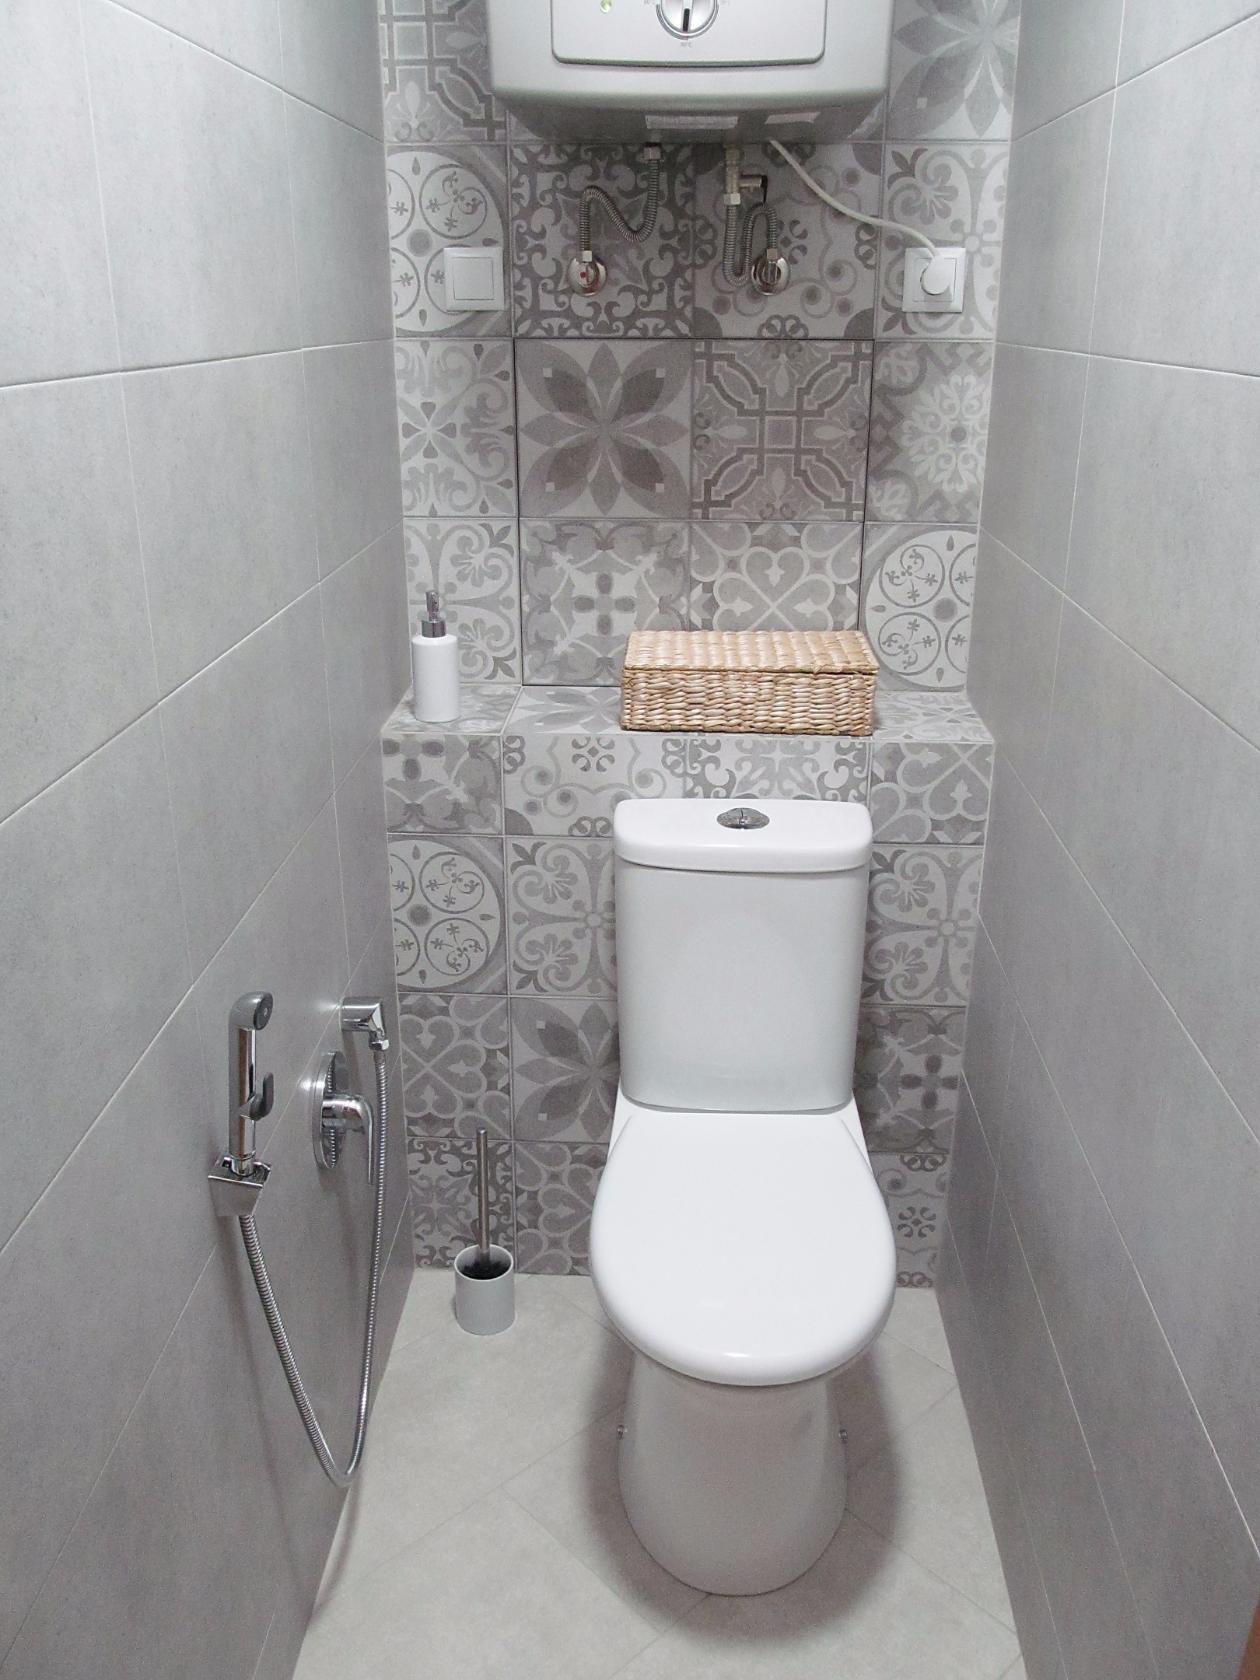 Особенности дизайна белой ванной комнаты